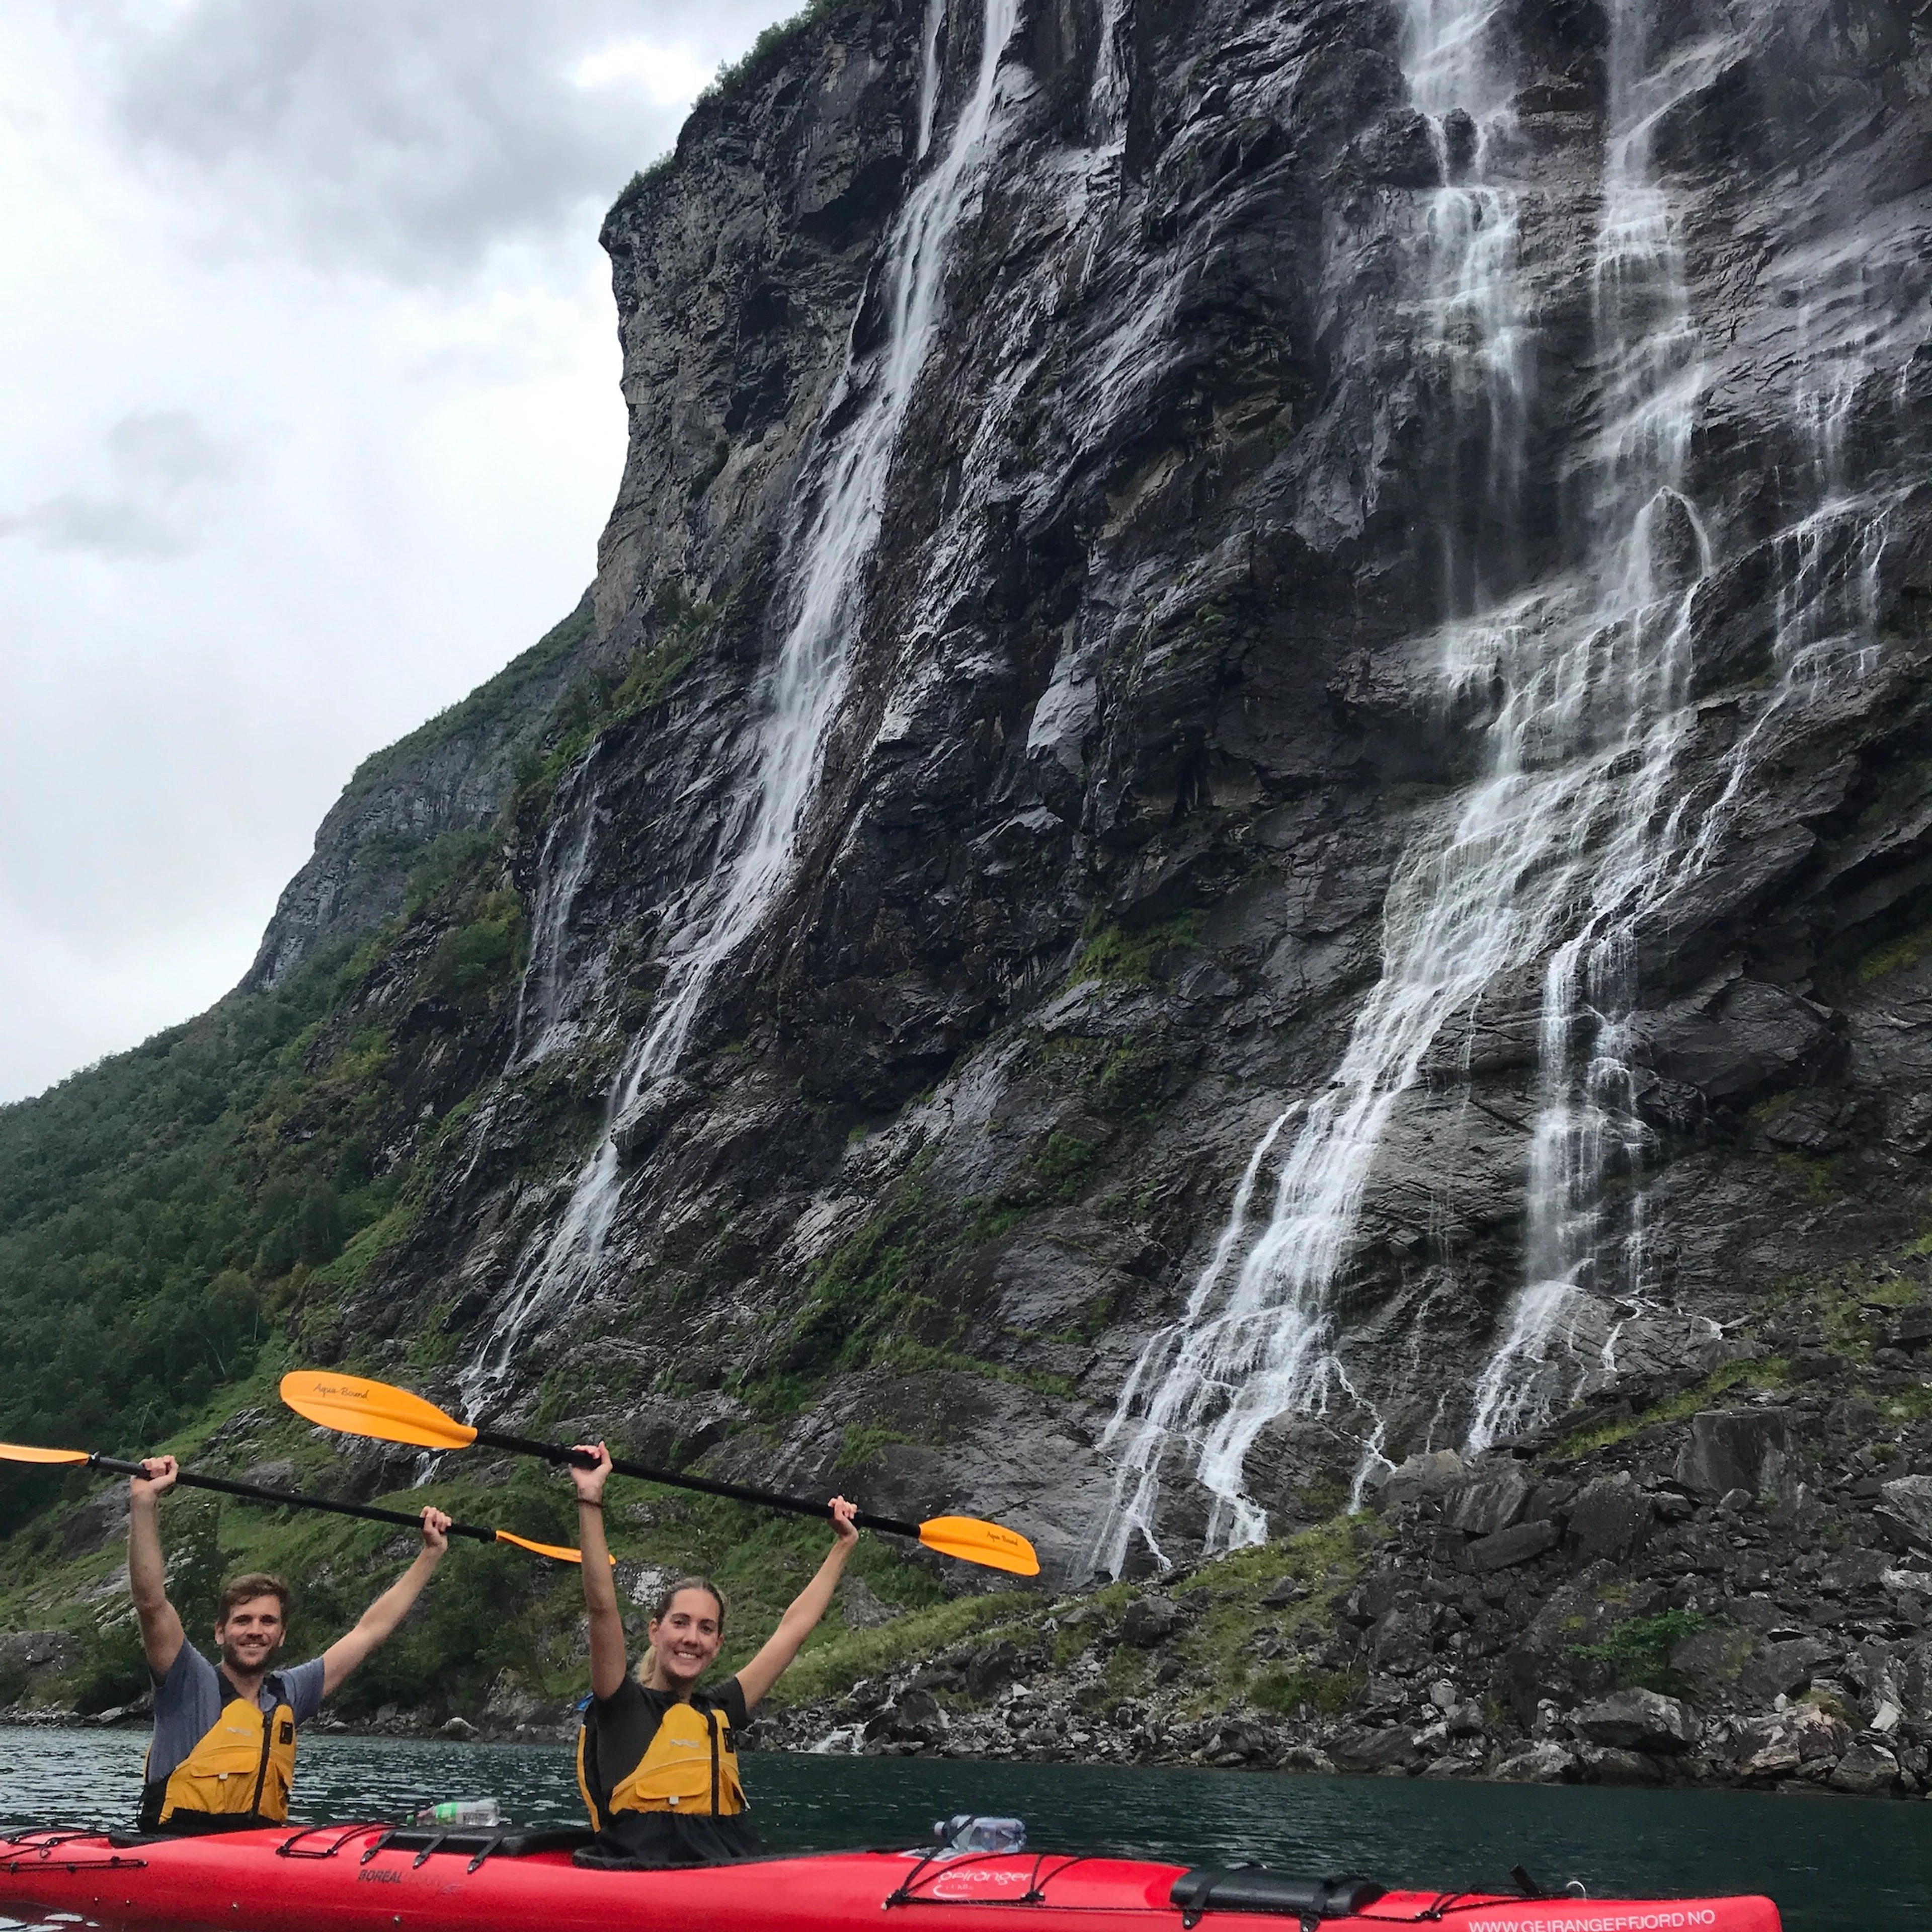 Geführte Kajaktour zu den "Sieben Schwestern" ab Geiranger, Geirangerfjord, Norwegen